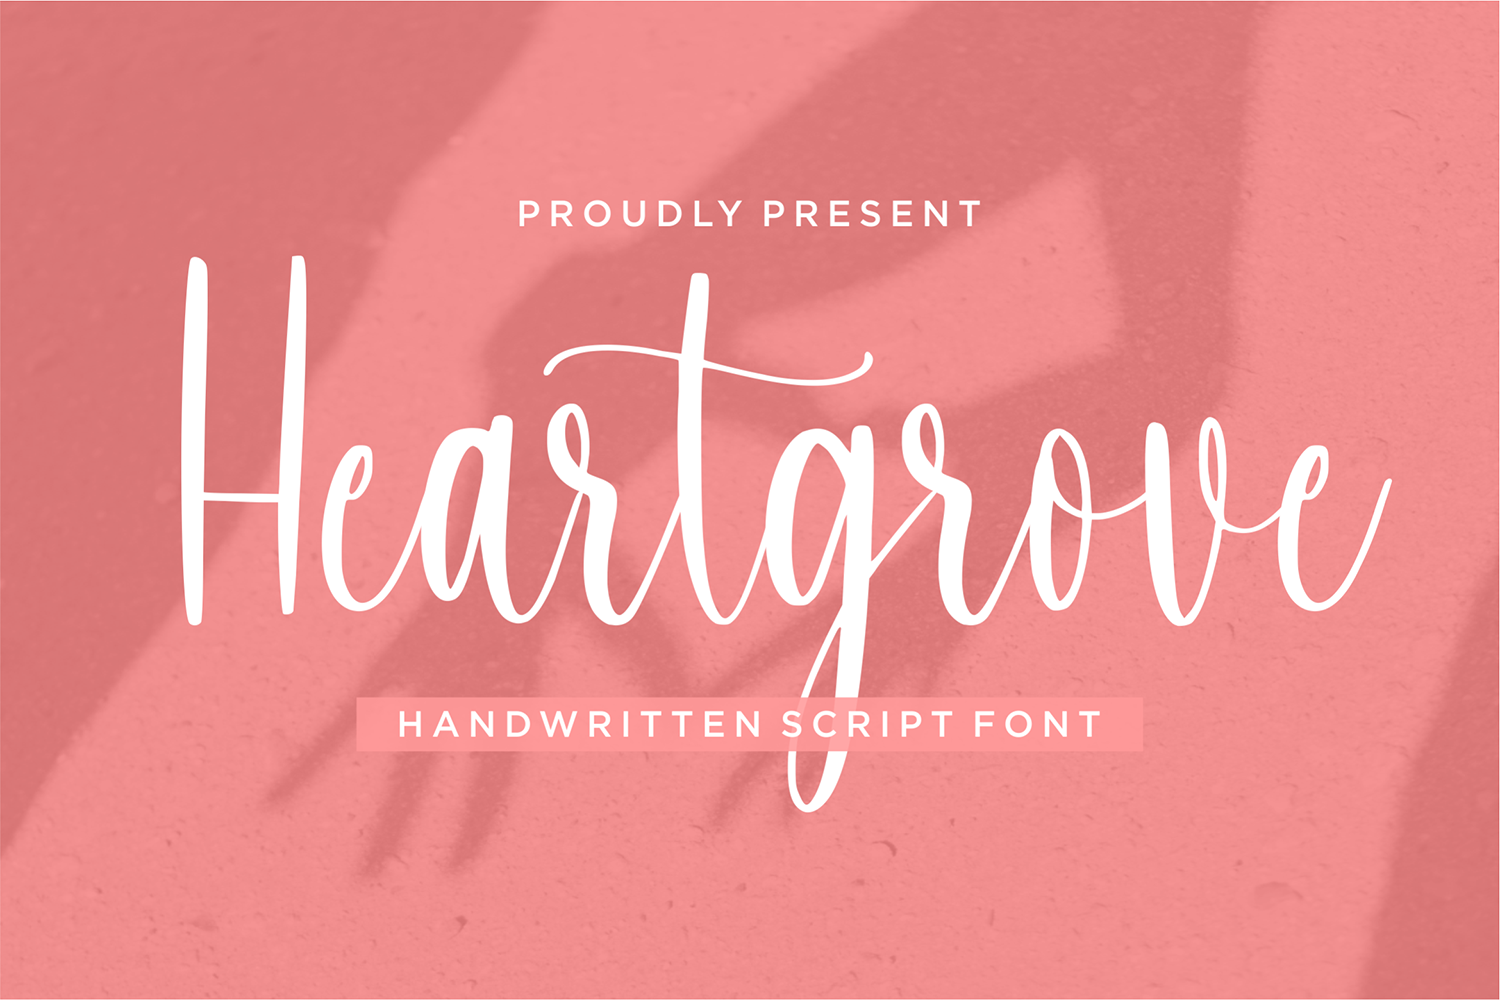 Heartgrove Free Font